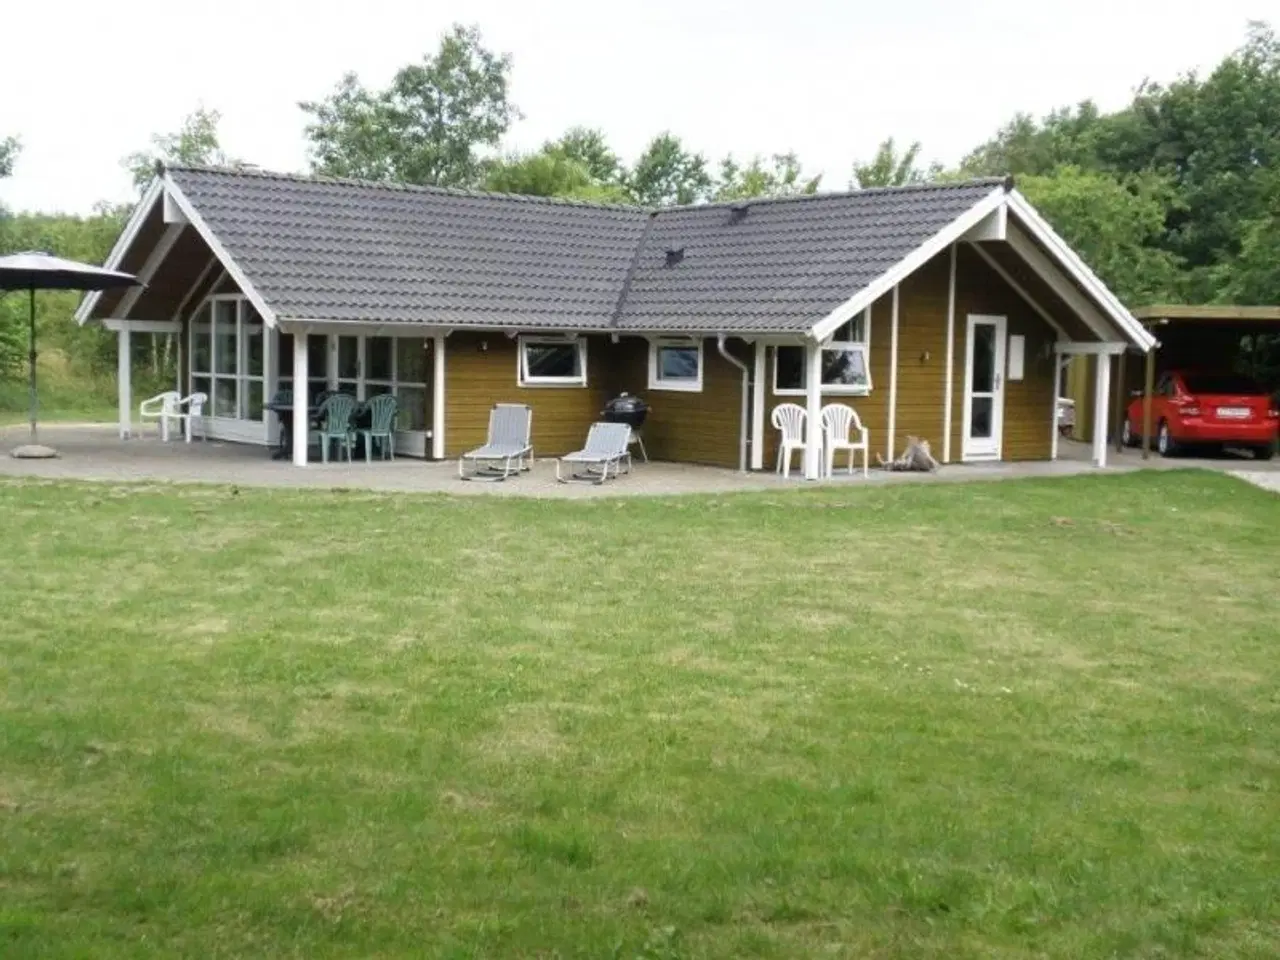 Billede 1 - Luksushus med spa, sauna. I hjertet af Arrildferieby. Sommerhus kun 200m til badeland med fri entre. Og 200m til fiskesø